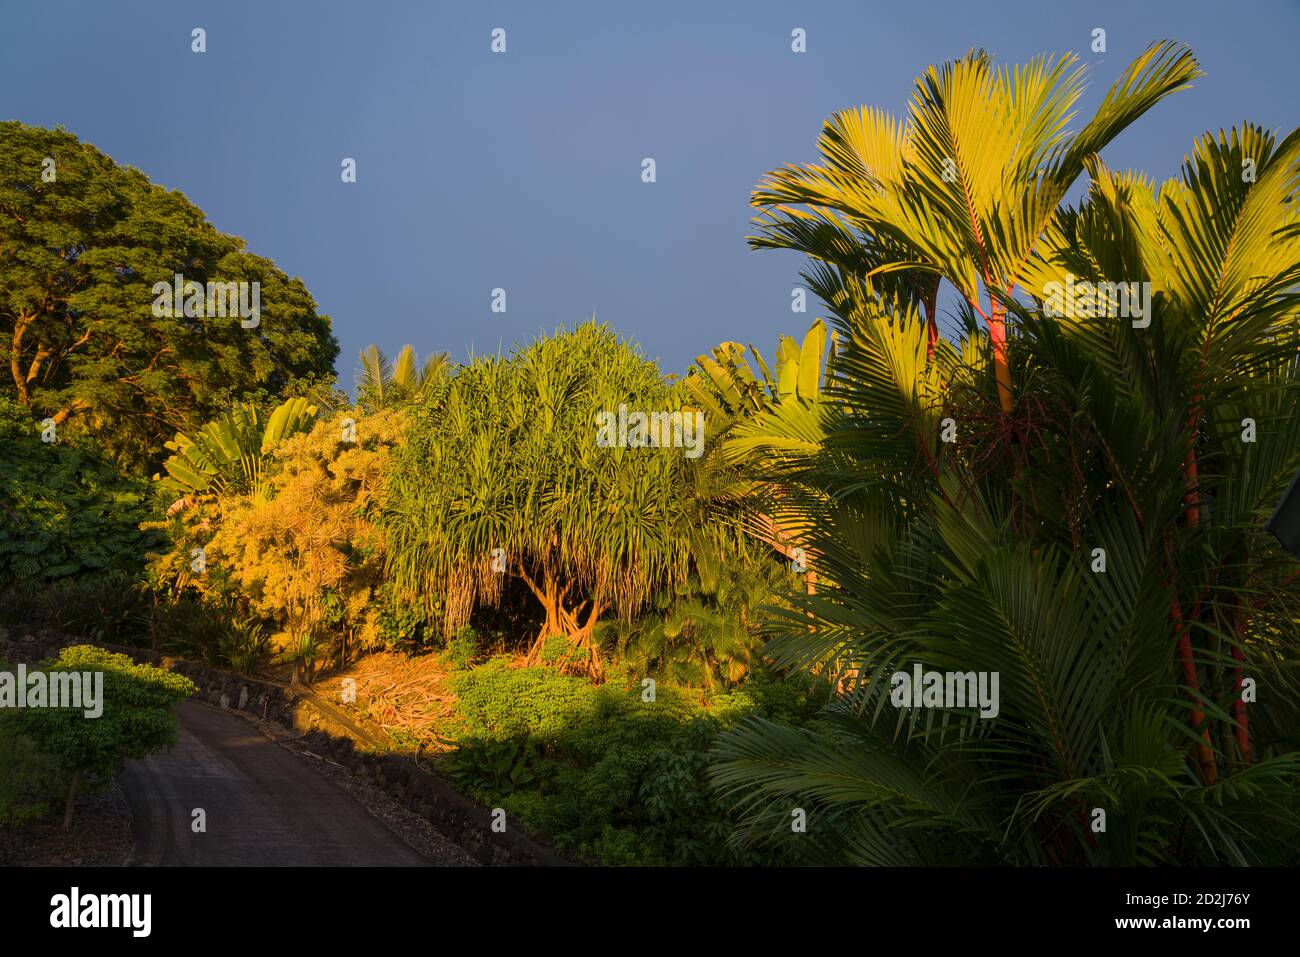 Golden Hour Sonnenlicht auf tropische Landschaft in South Kona, Hawaii einschließlich Lauhala Baum, versiegeltes Wachs Palme, Reisende Palme, Jacaranda Baum, Monestera. Stockfoto